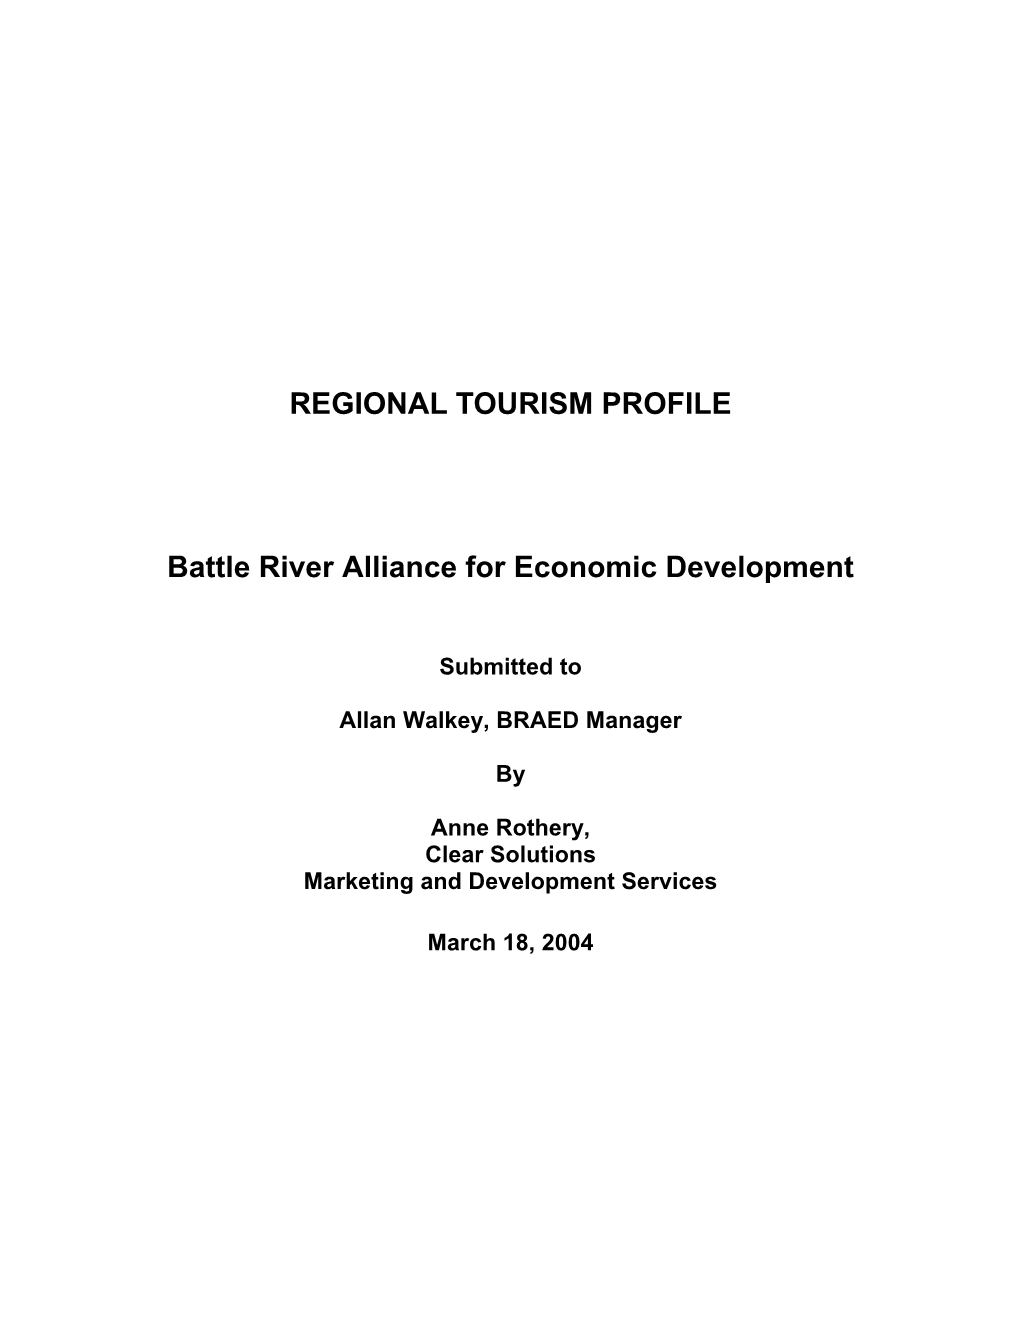 REGIONAL TOURISM PROFILE Battle River Alliance for Economic